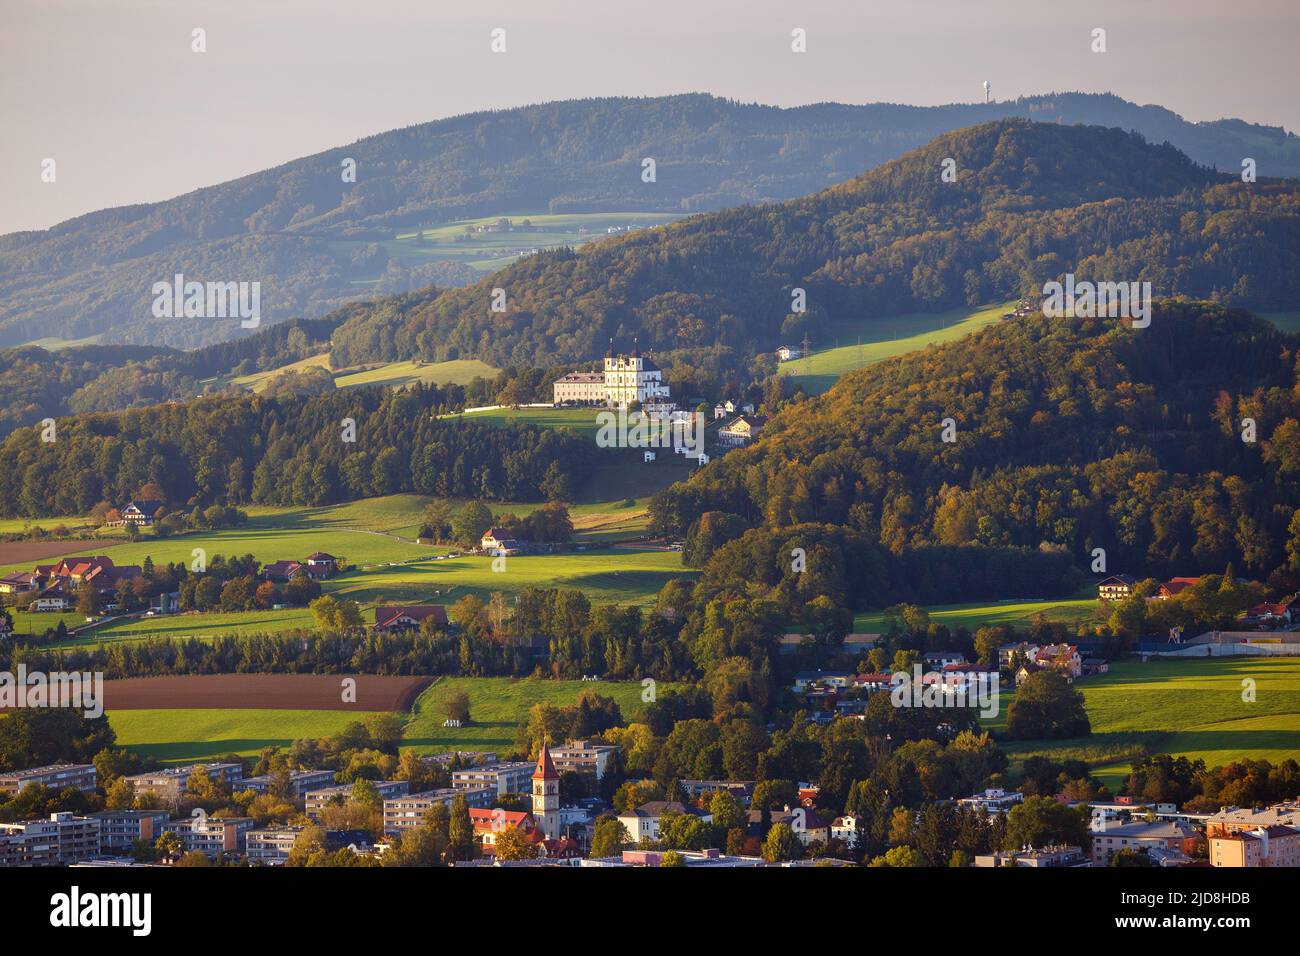 At sunset, view on hills, Maria Plain sanctuarie. Autumn season. Salzburg. Austria. Europe. Stock Photo